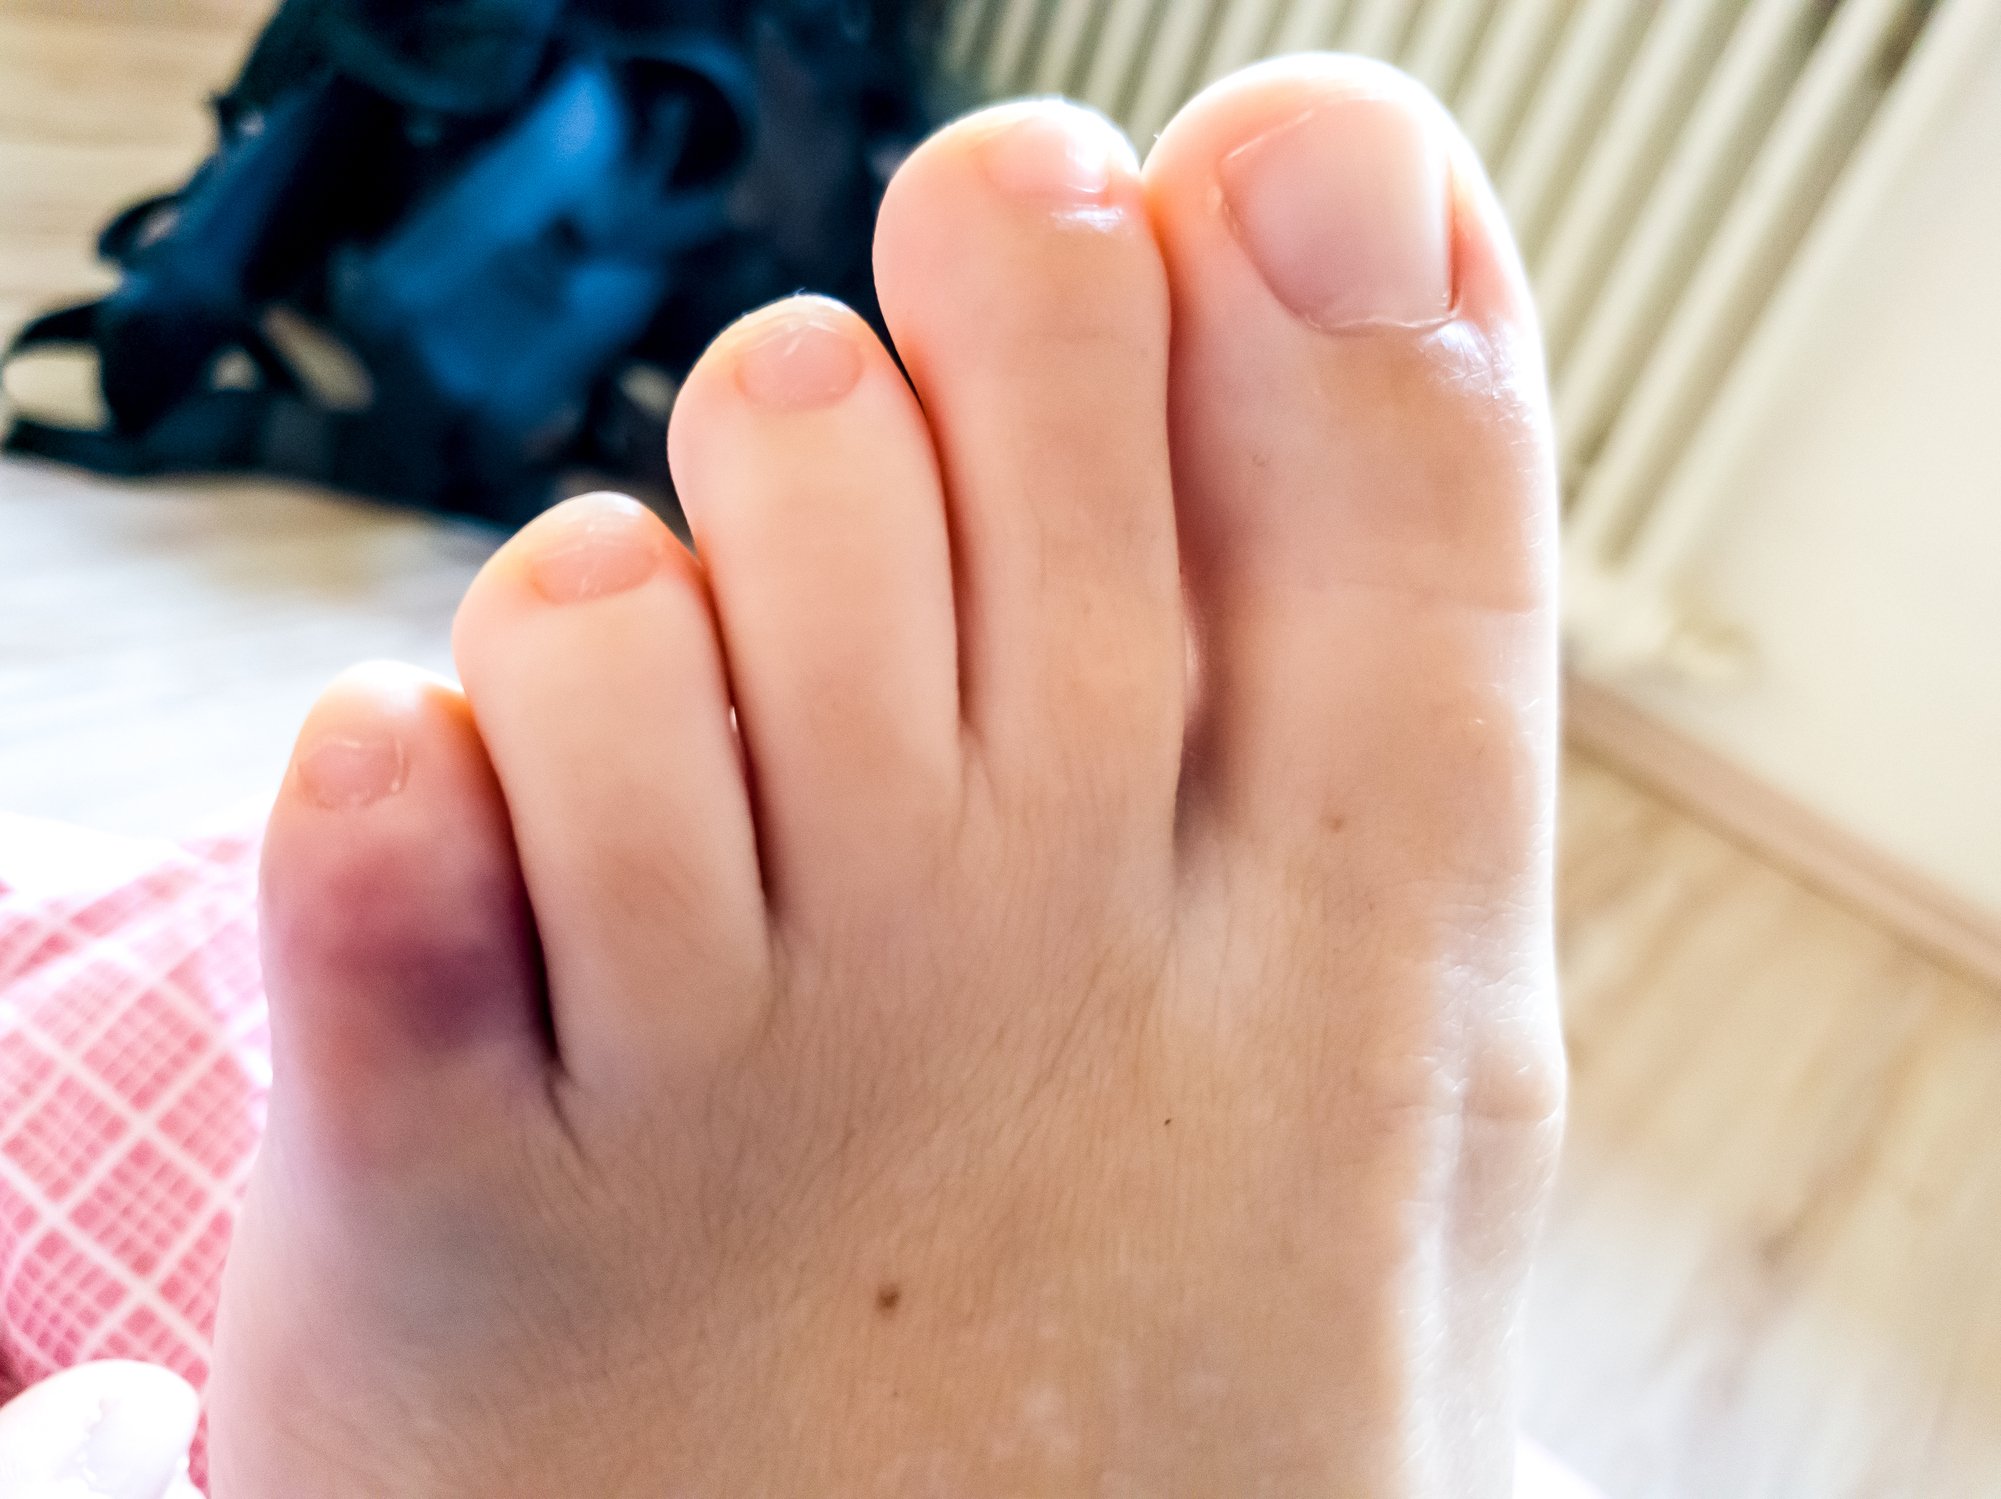 фото ушибленного пальца на ноге